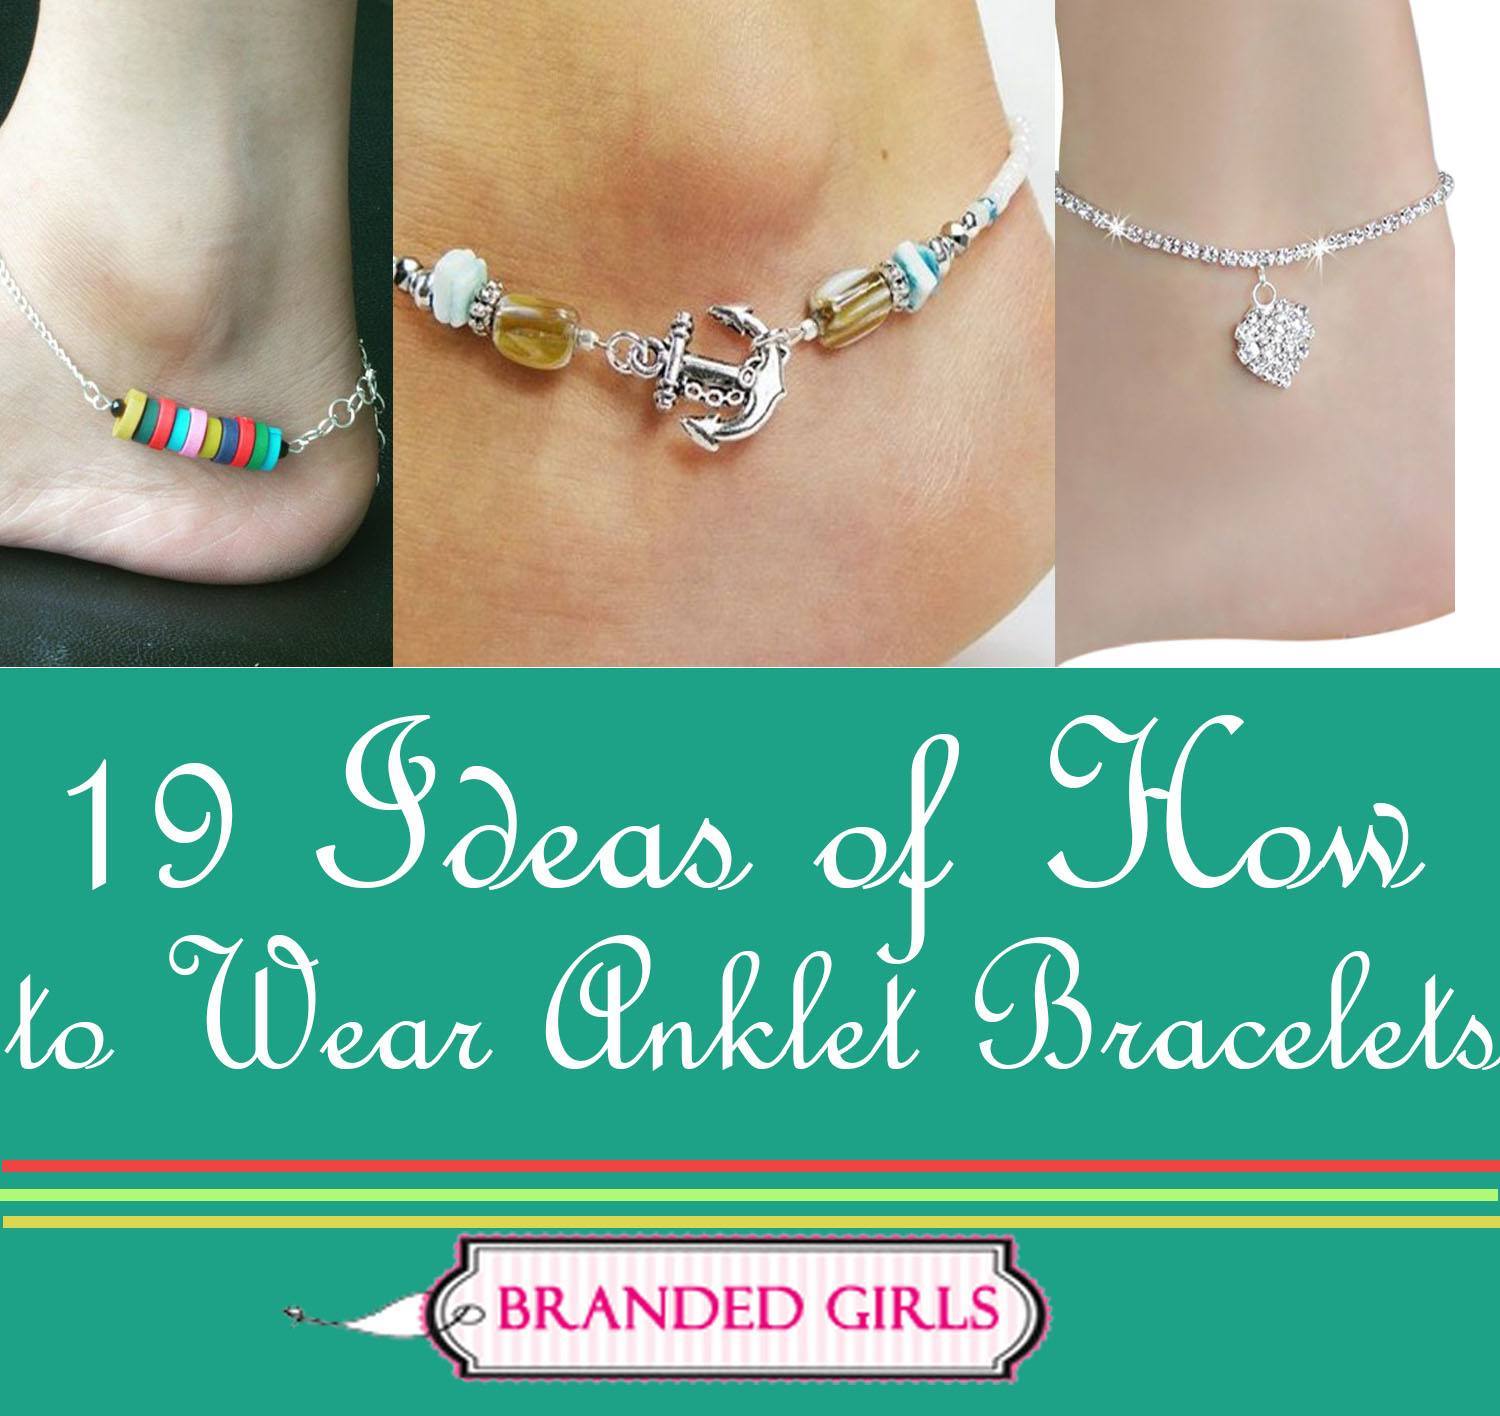 Cute Ankle Bracelets 19 Ideas how to Wear Ankle Bracelets